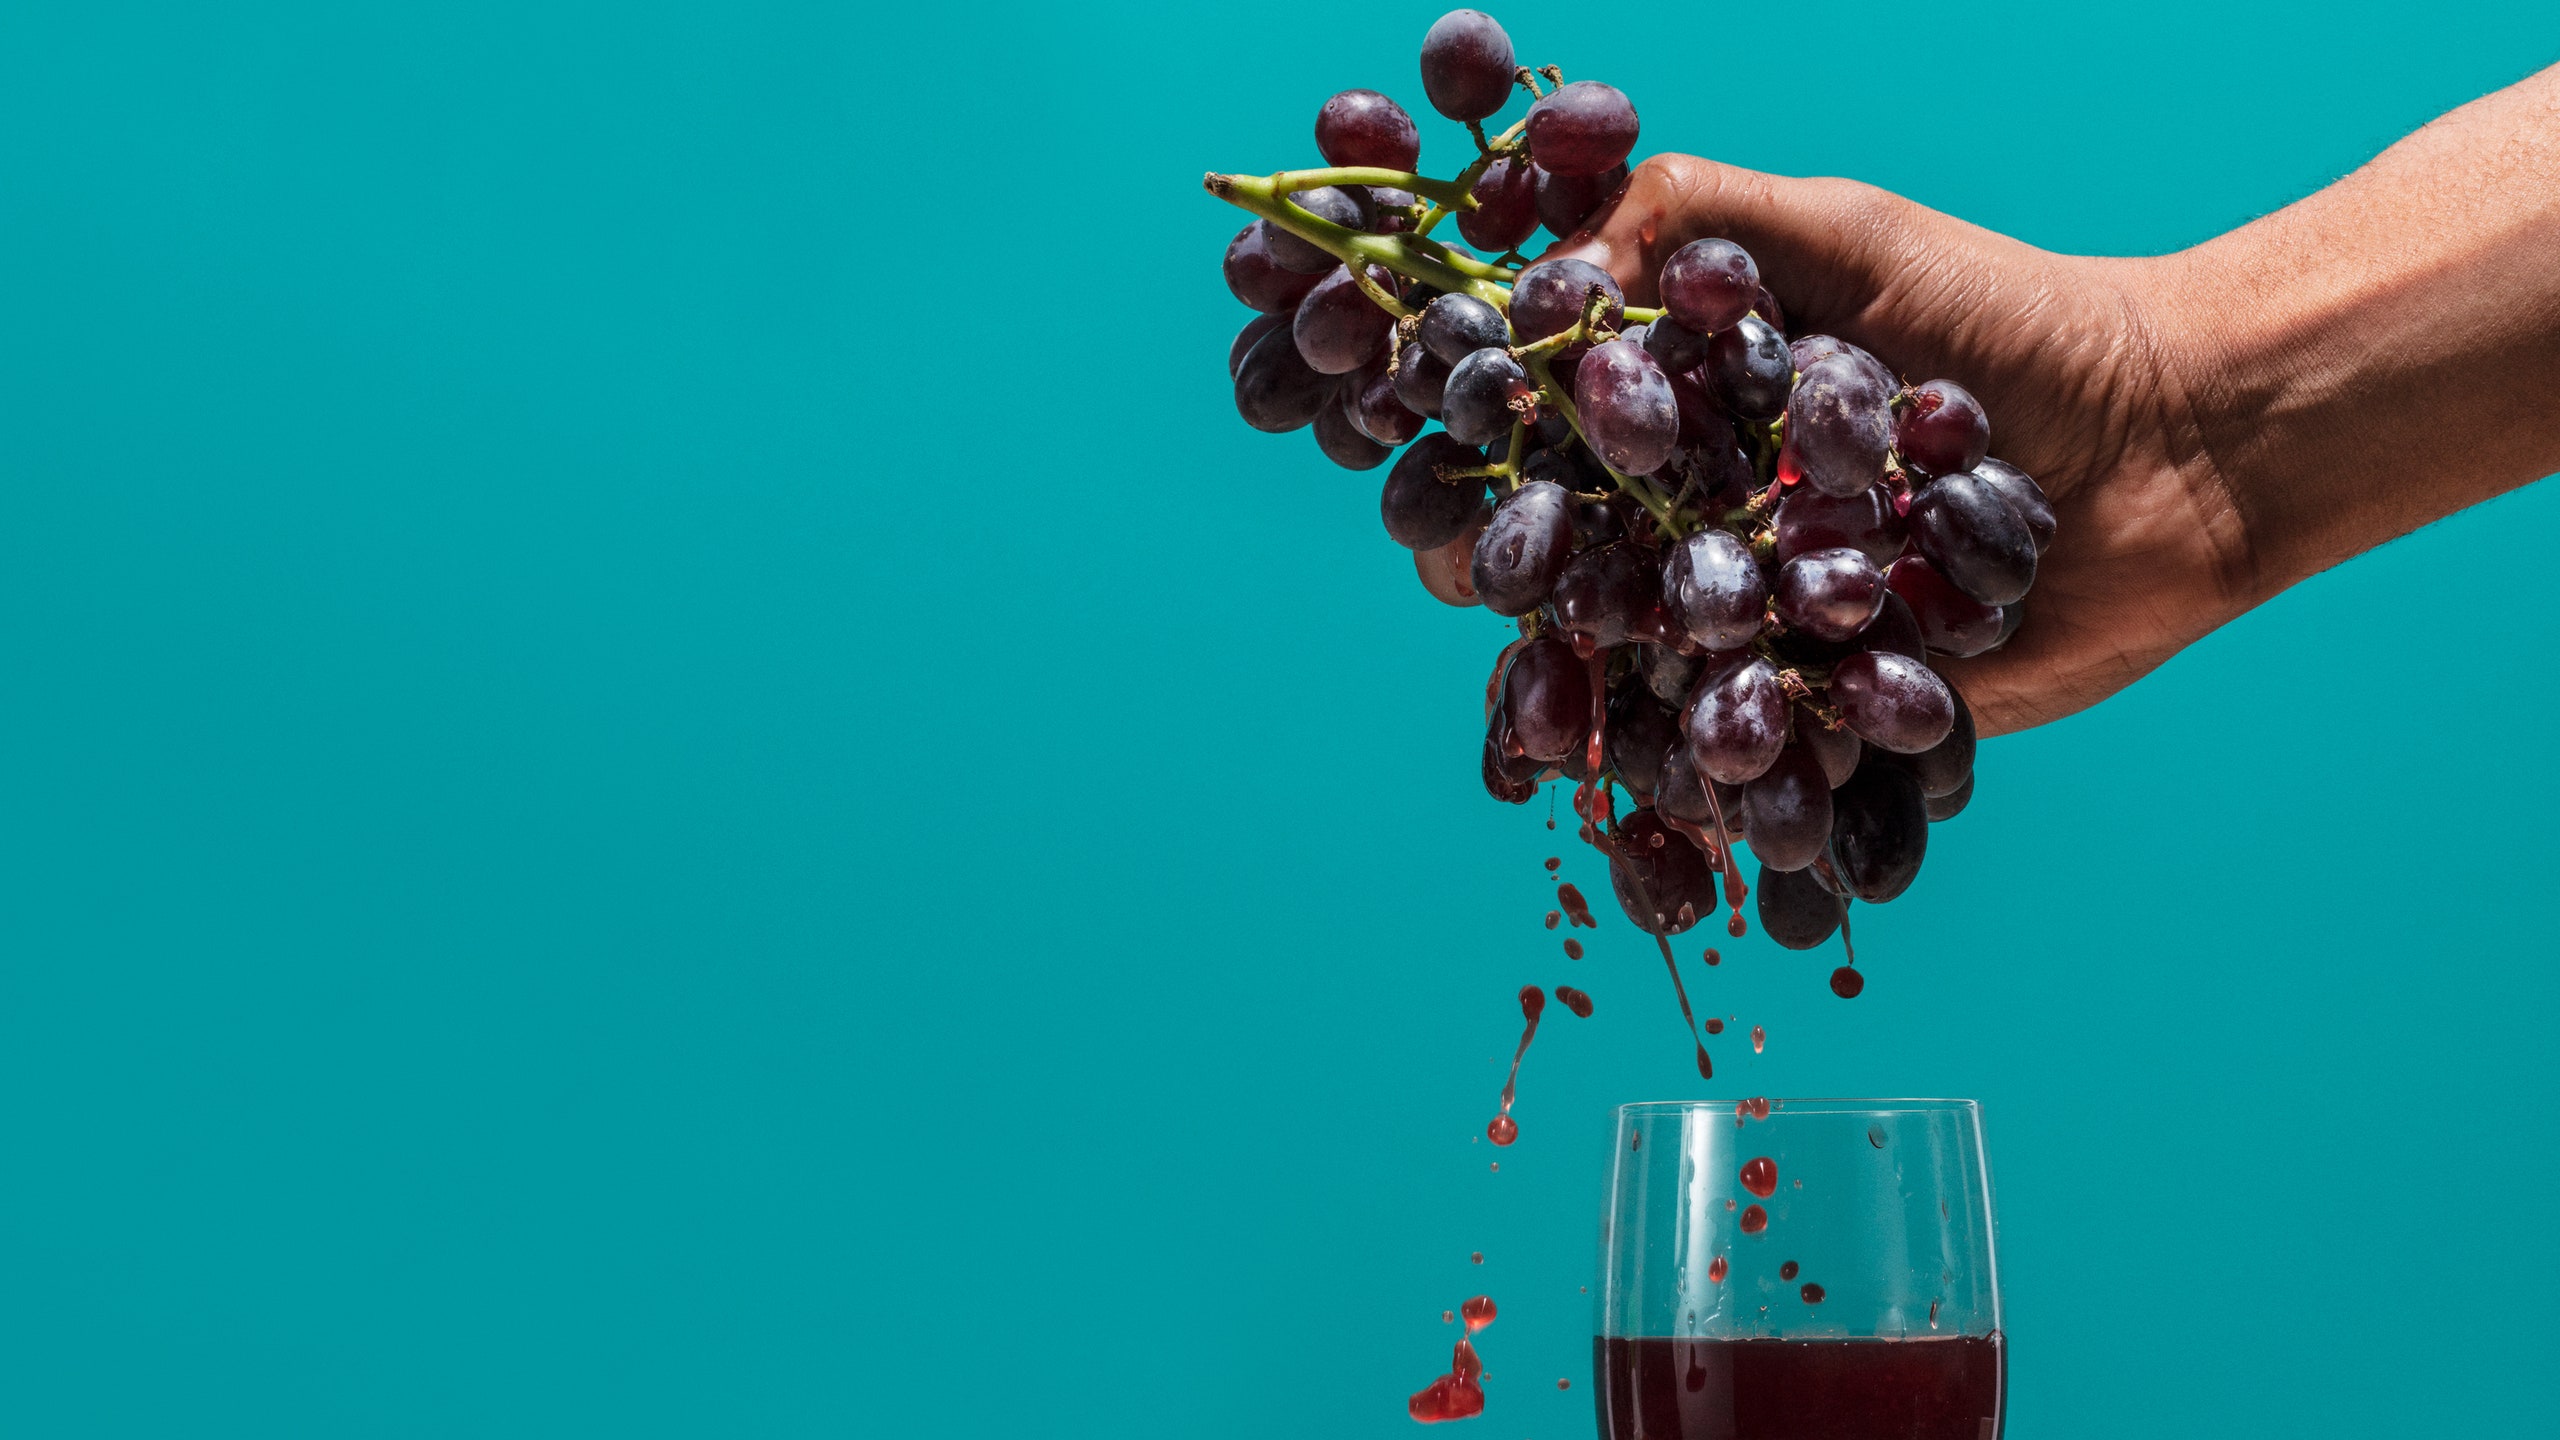 Vinho tem aroma de uva? Crédito: Prop Stylist: Leigh Gill